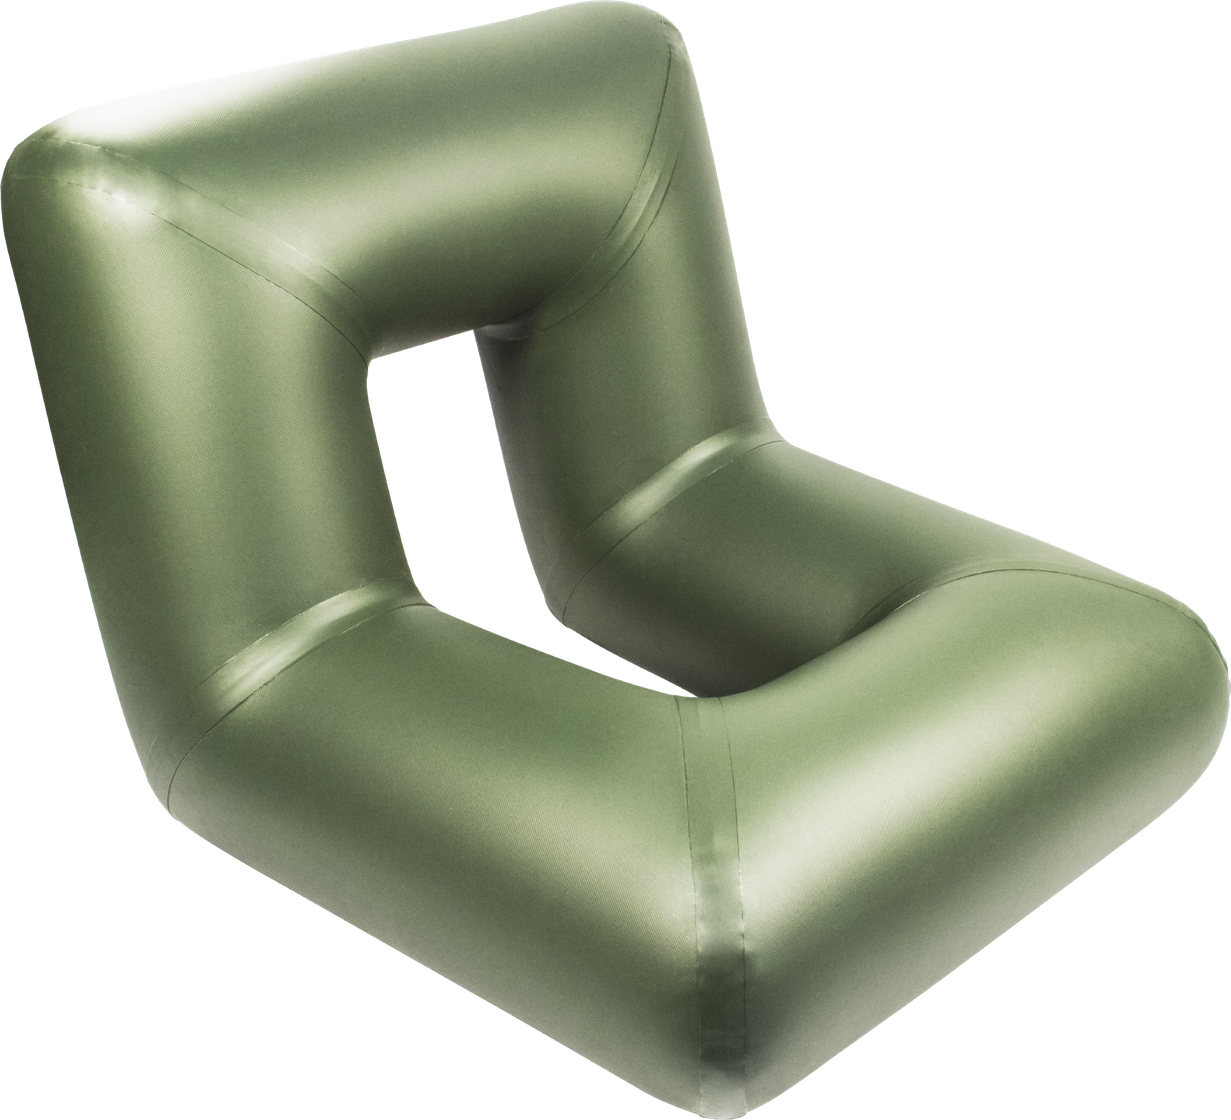 Сиденье надувное пвх. Надувное кресло мастер лодок. Надувное универсальное сиденье «комфорт-ТТ». Кресло комфорт надувное мастер лодок. Кресло надувное кн-1 для надувных лодок (зеленый) Тонар.